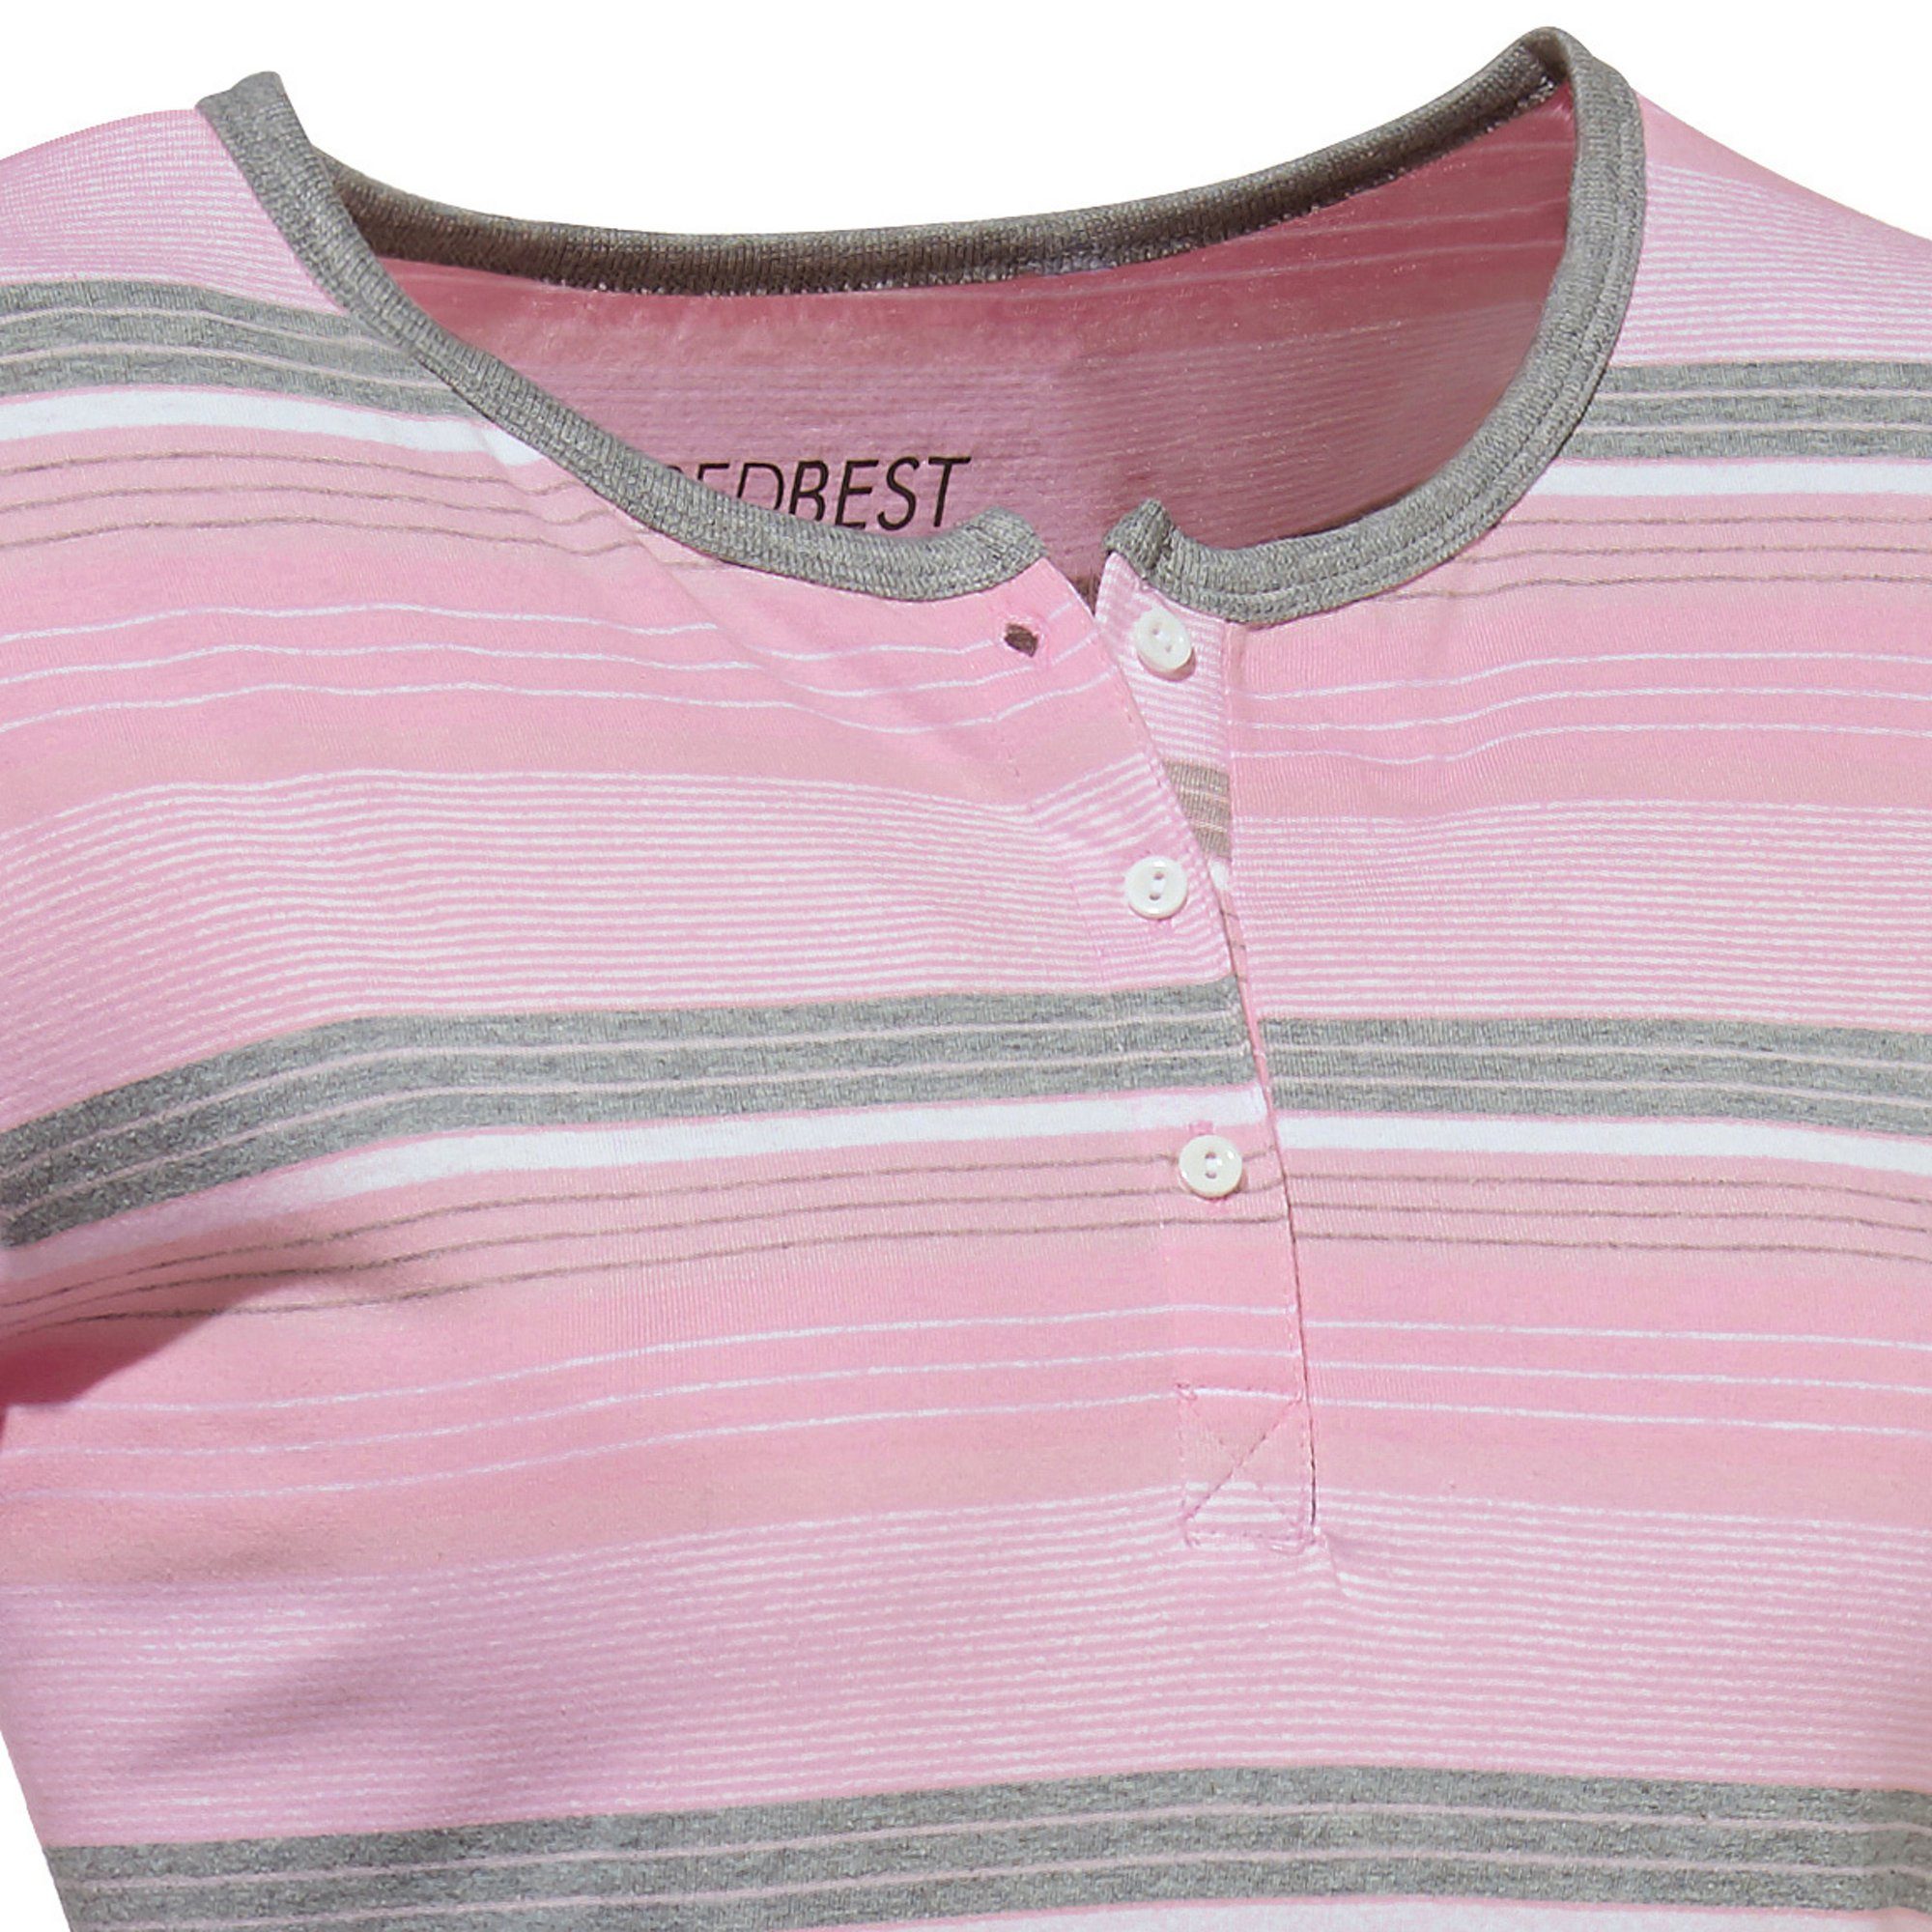 REDBEST Damen-Nachthemd Streifen Nachthemd Single-Jersey